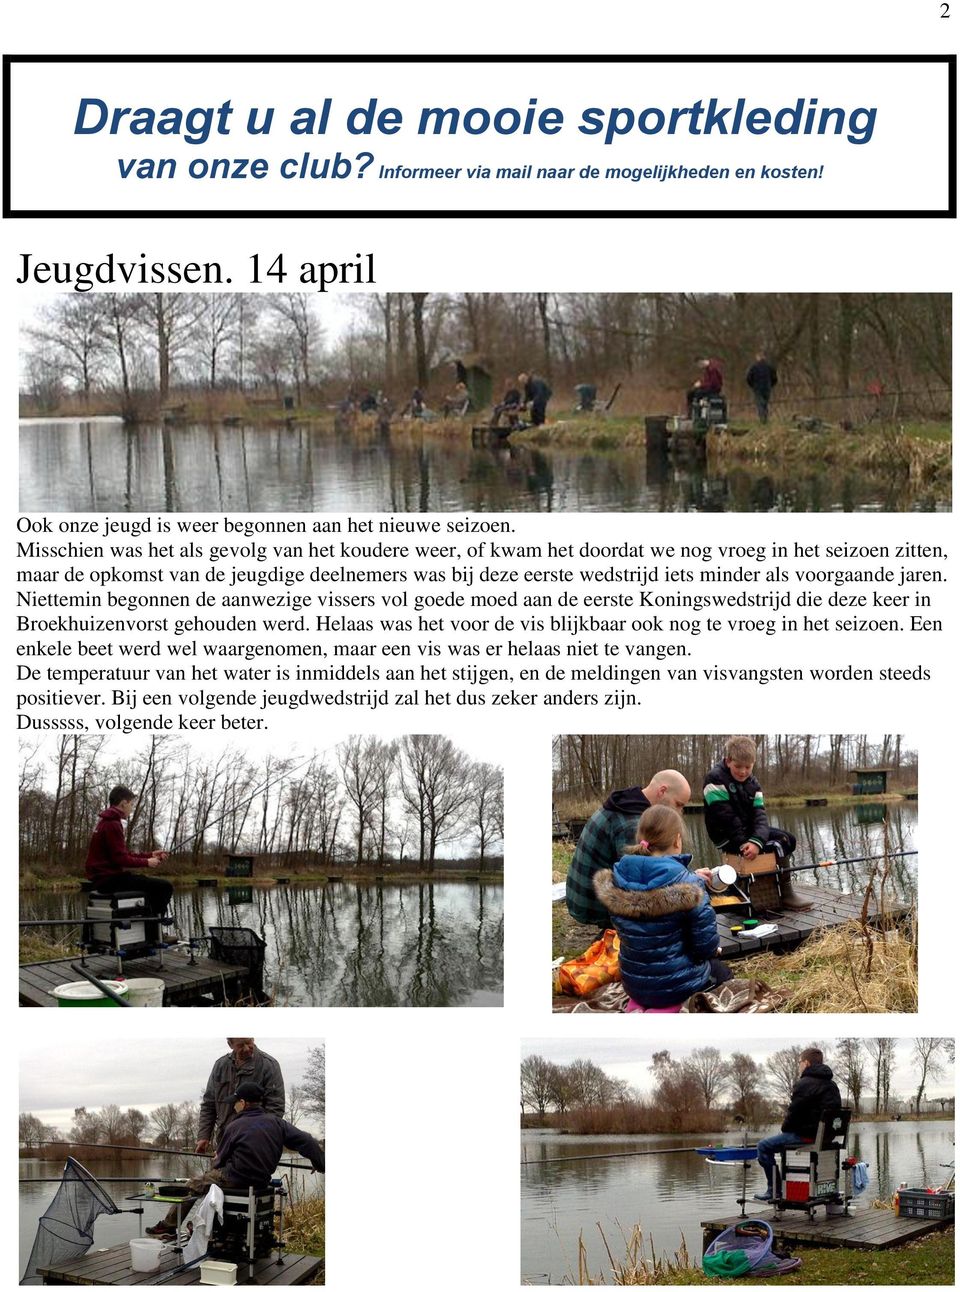 voorgaande jaren. Niettemin begonnen de aanwezige vissers vol goede moed aan de eerste Koningswedstrijd die deze keer in Broekhuizenvorst gehouden werd.